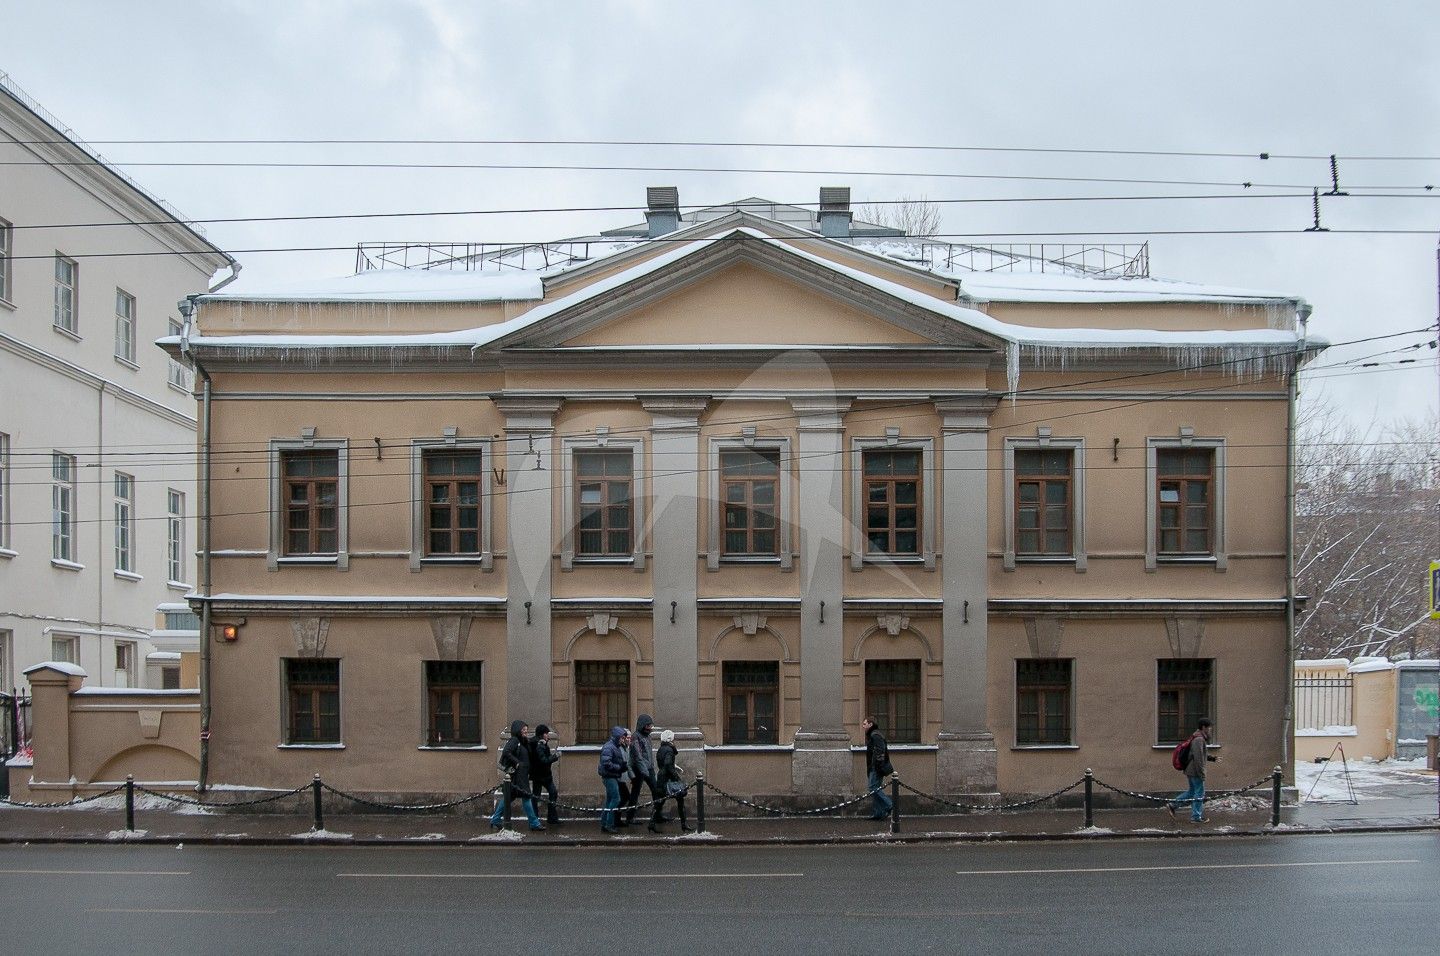 Жилой дом прокурора Синодальной конторы, 1817 г., арх. И.Н. Лизогубов